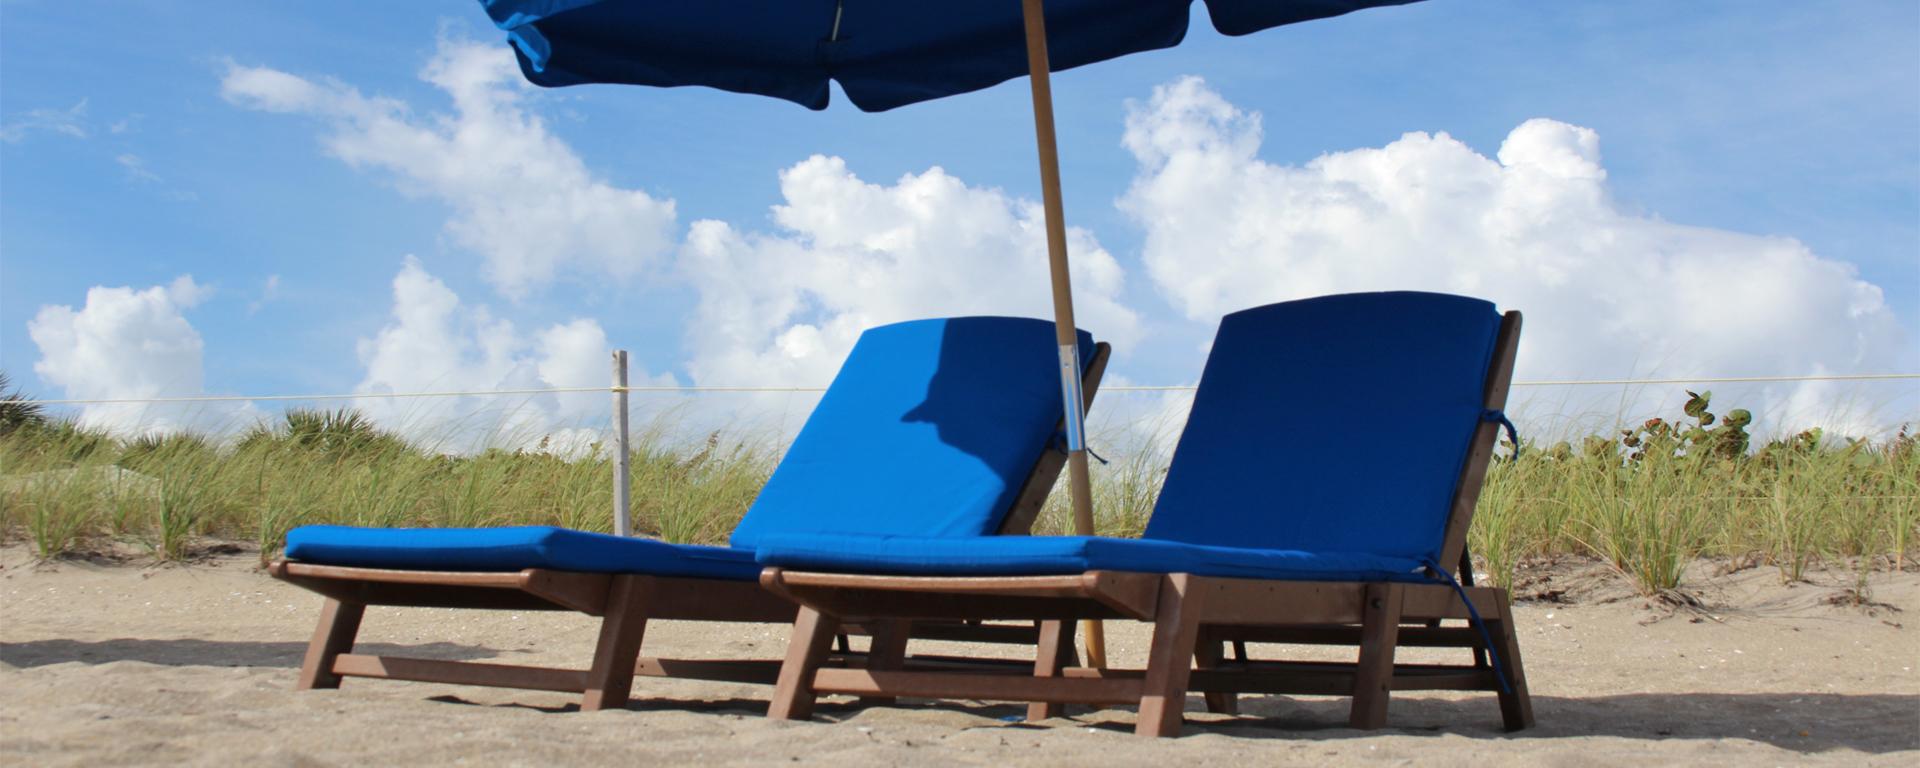 Modern Beach Chair Rentals Manhattan Beach for Large Space